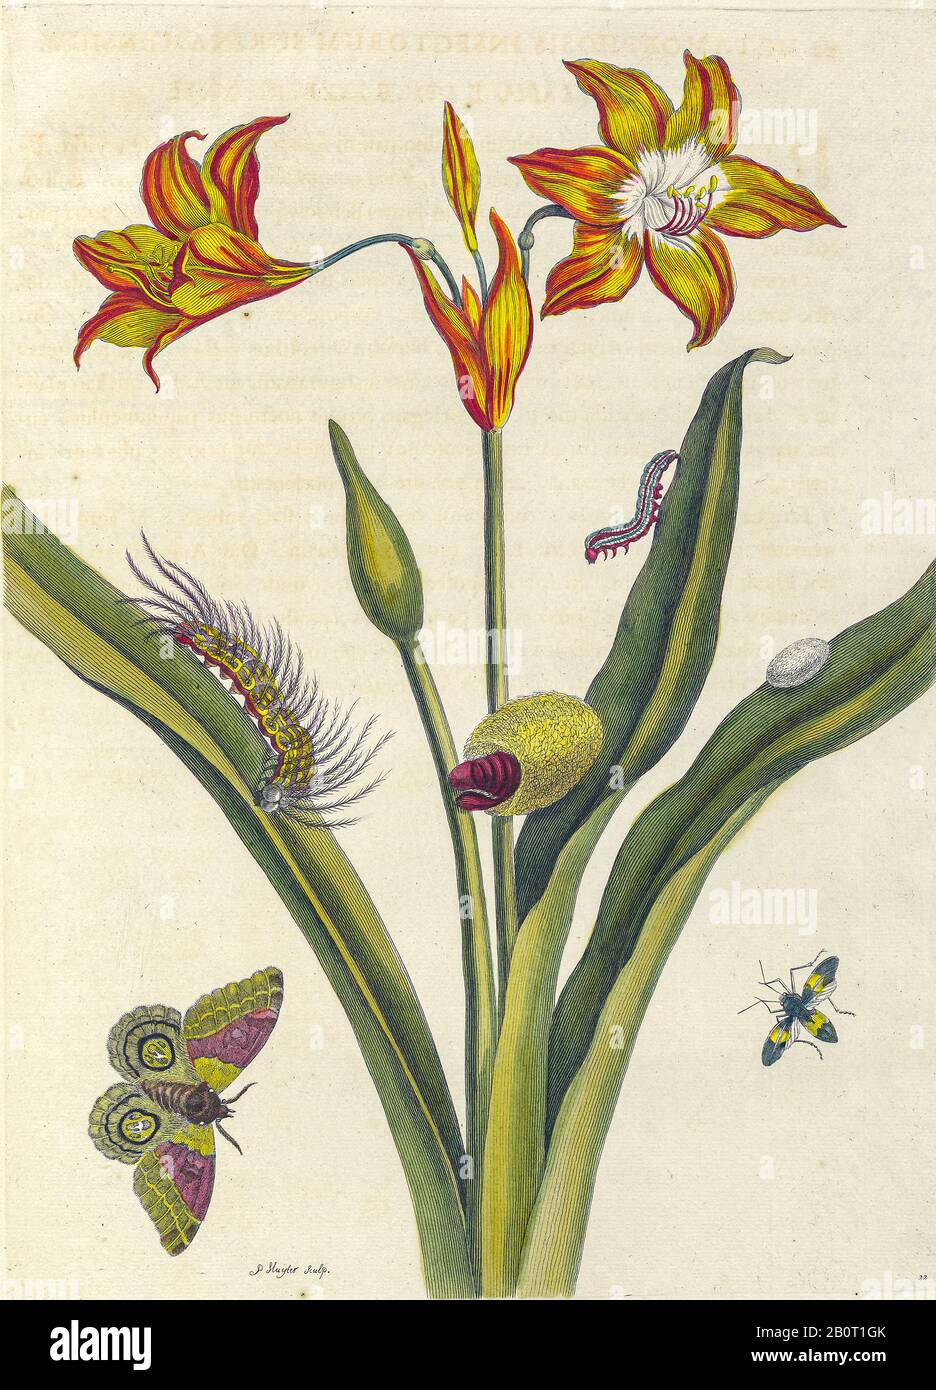 Pflanzen und Schmetterlinge aus Metamorphosis insectorum Surinamensium (Surinam Insects) ein handfarbenes Buch aus dem 18. Jahrhundert von Maria Sibylla Merian veröffentlicht Stockfoto